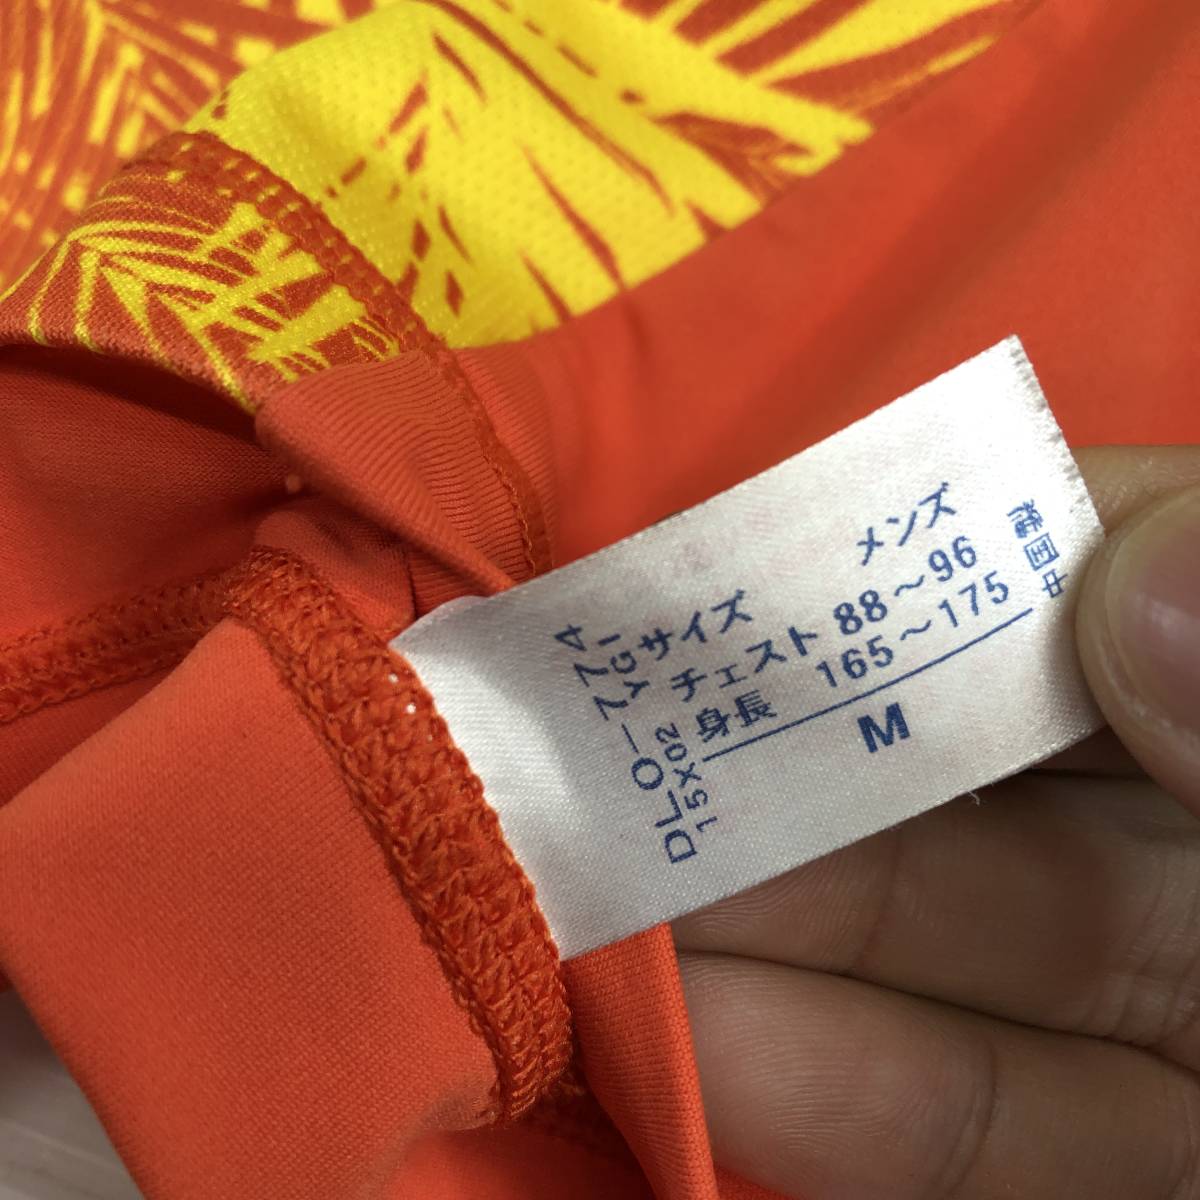 ワコール WACOAL CW-X 半袖速乾ポロシャツ メンズMサイズ DLO-774 イエロー オレンジ_画像4